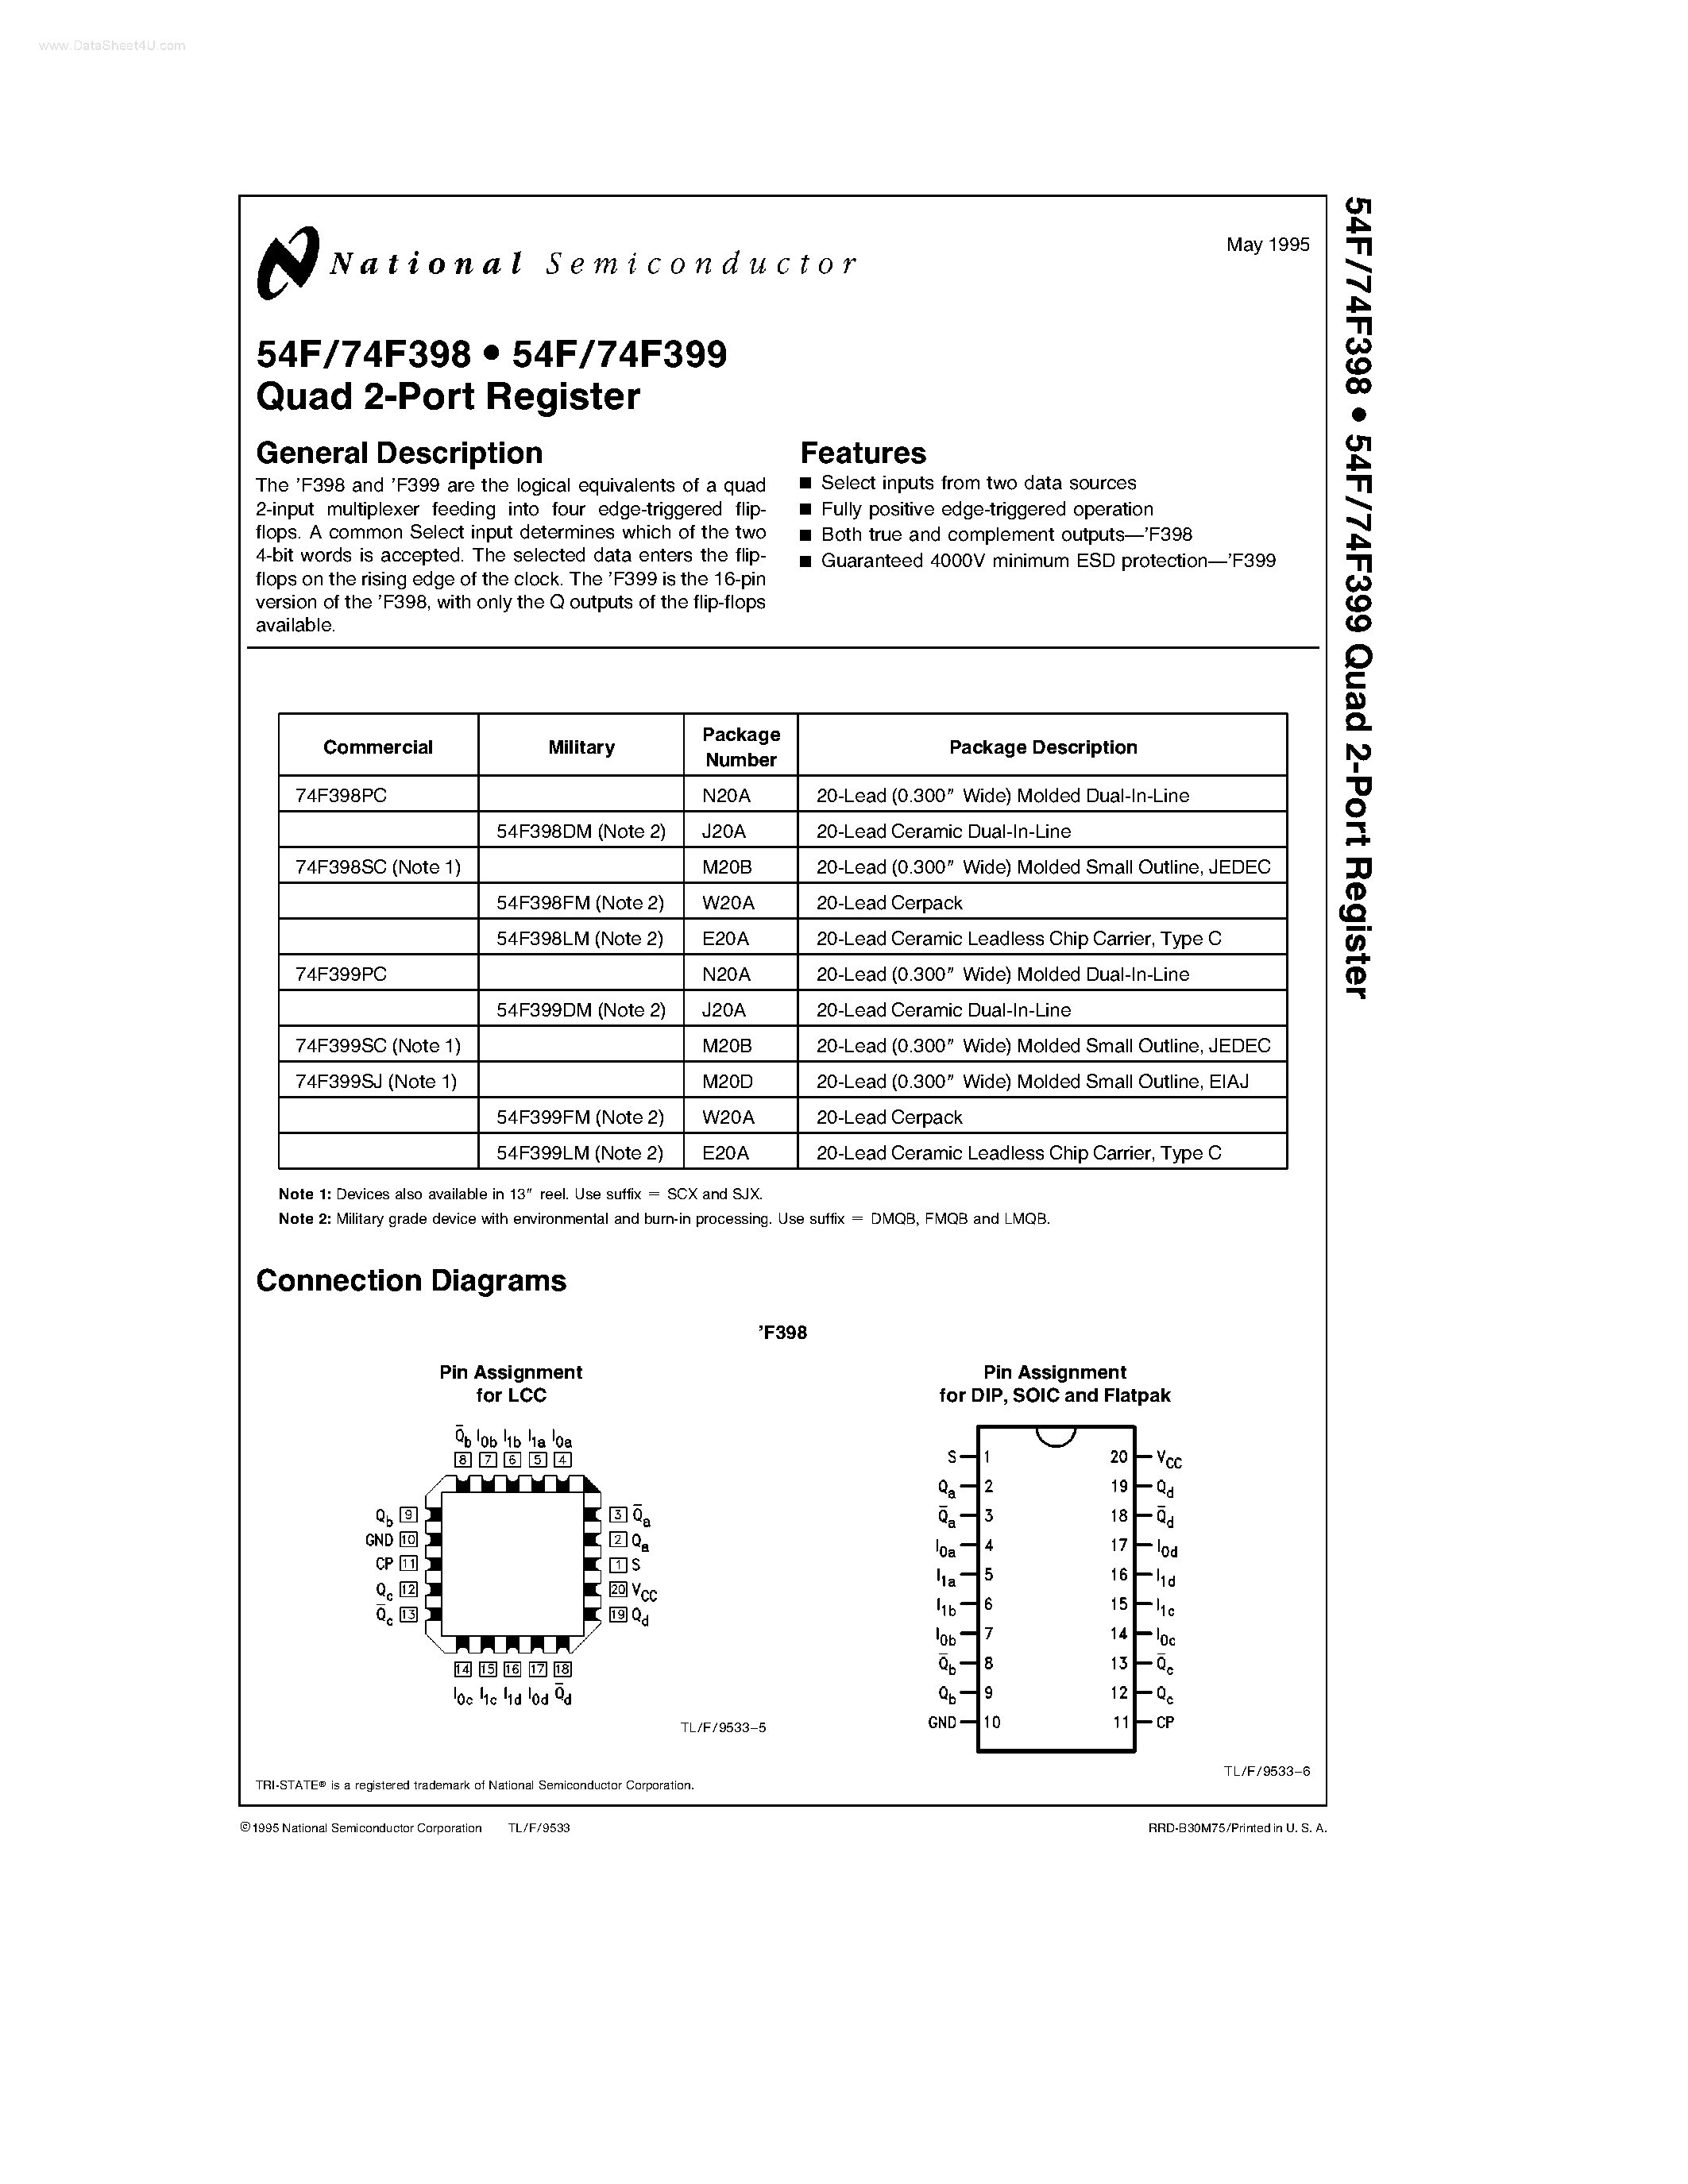 Datasheet 54F399 - (54F398 / 54F399) Quad 2-Port Register page 1